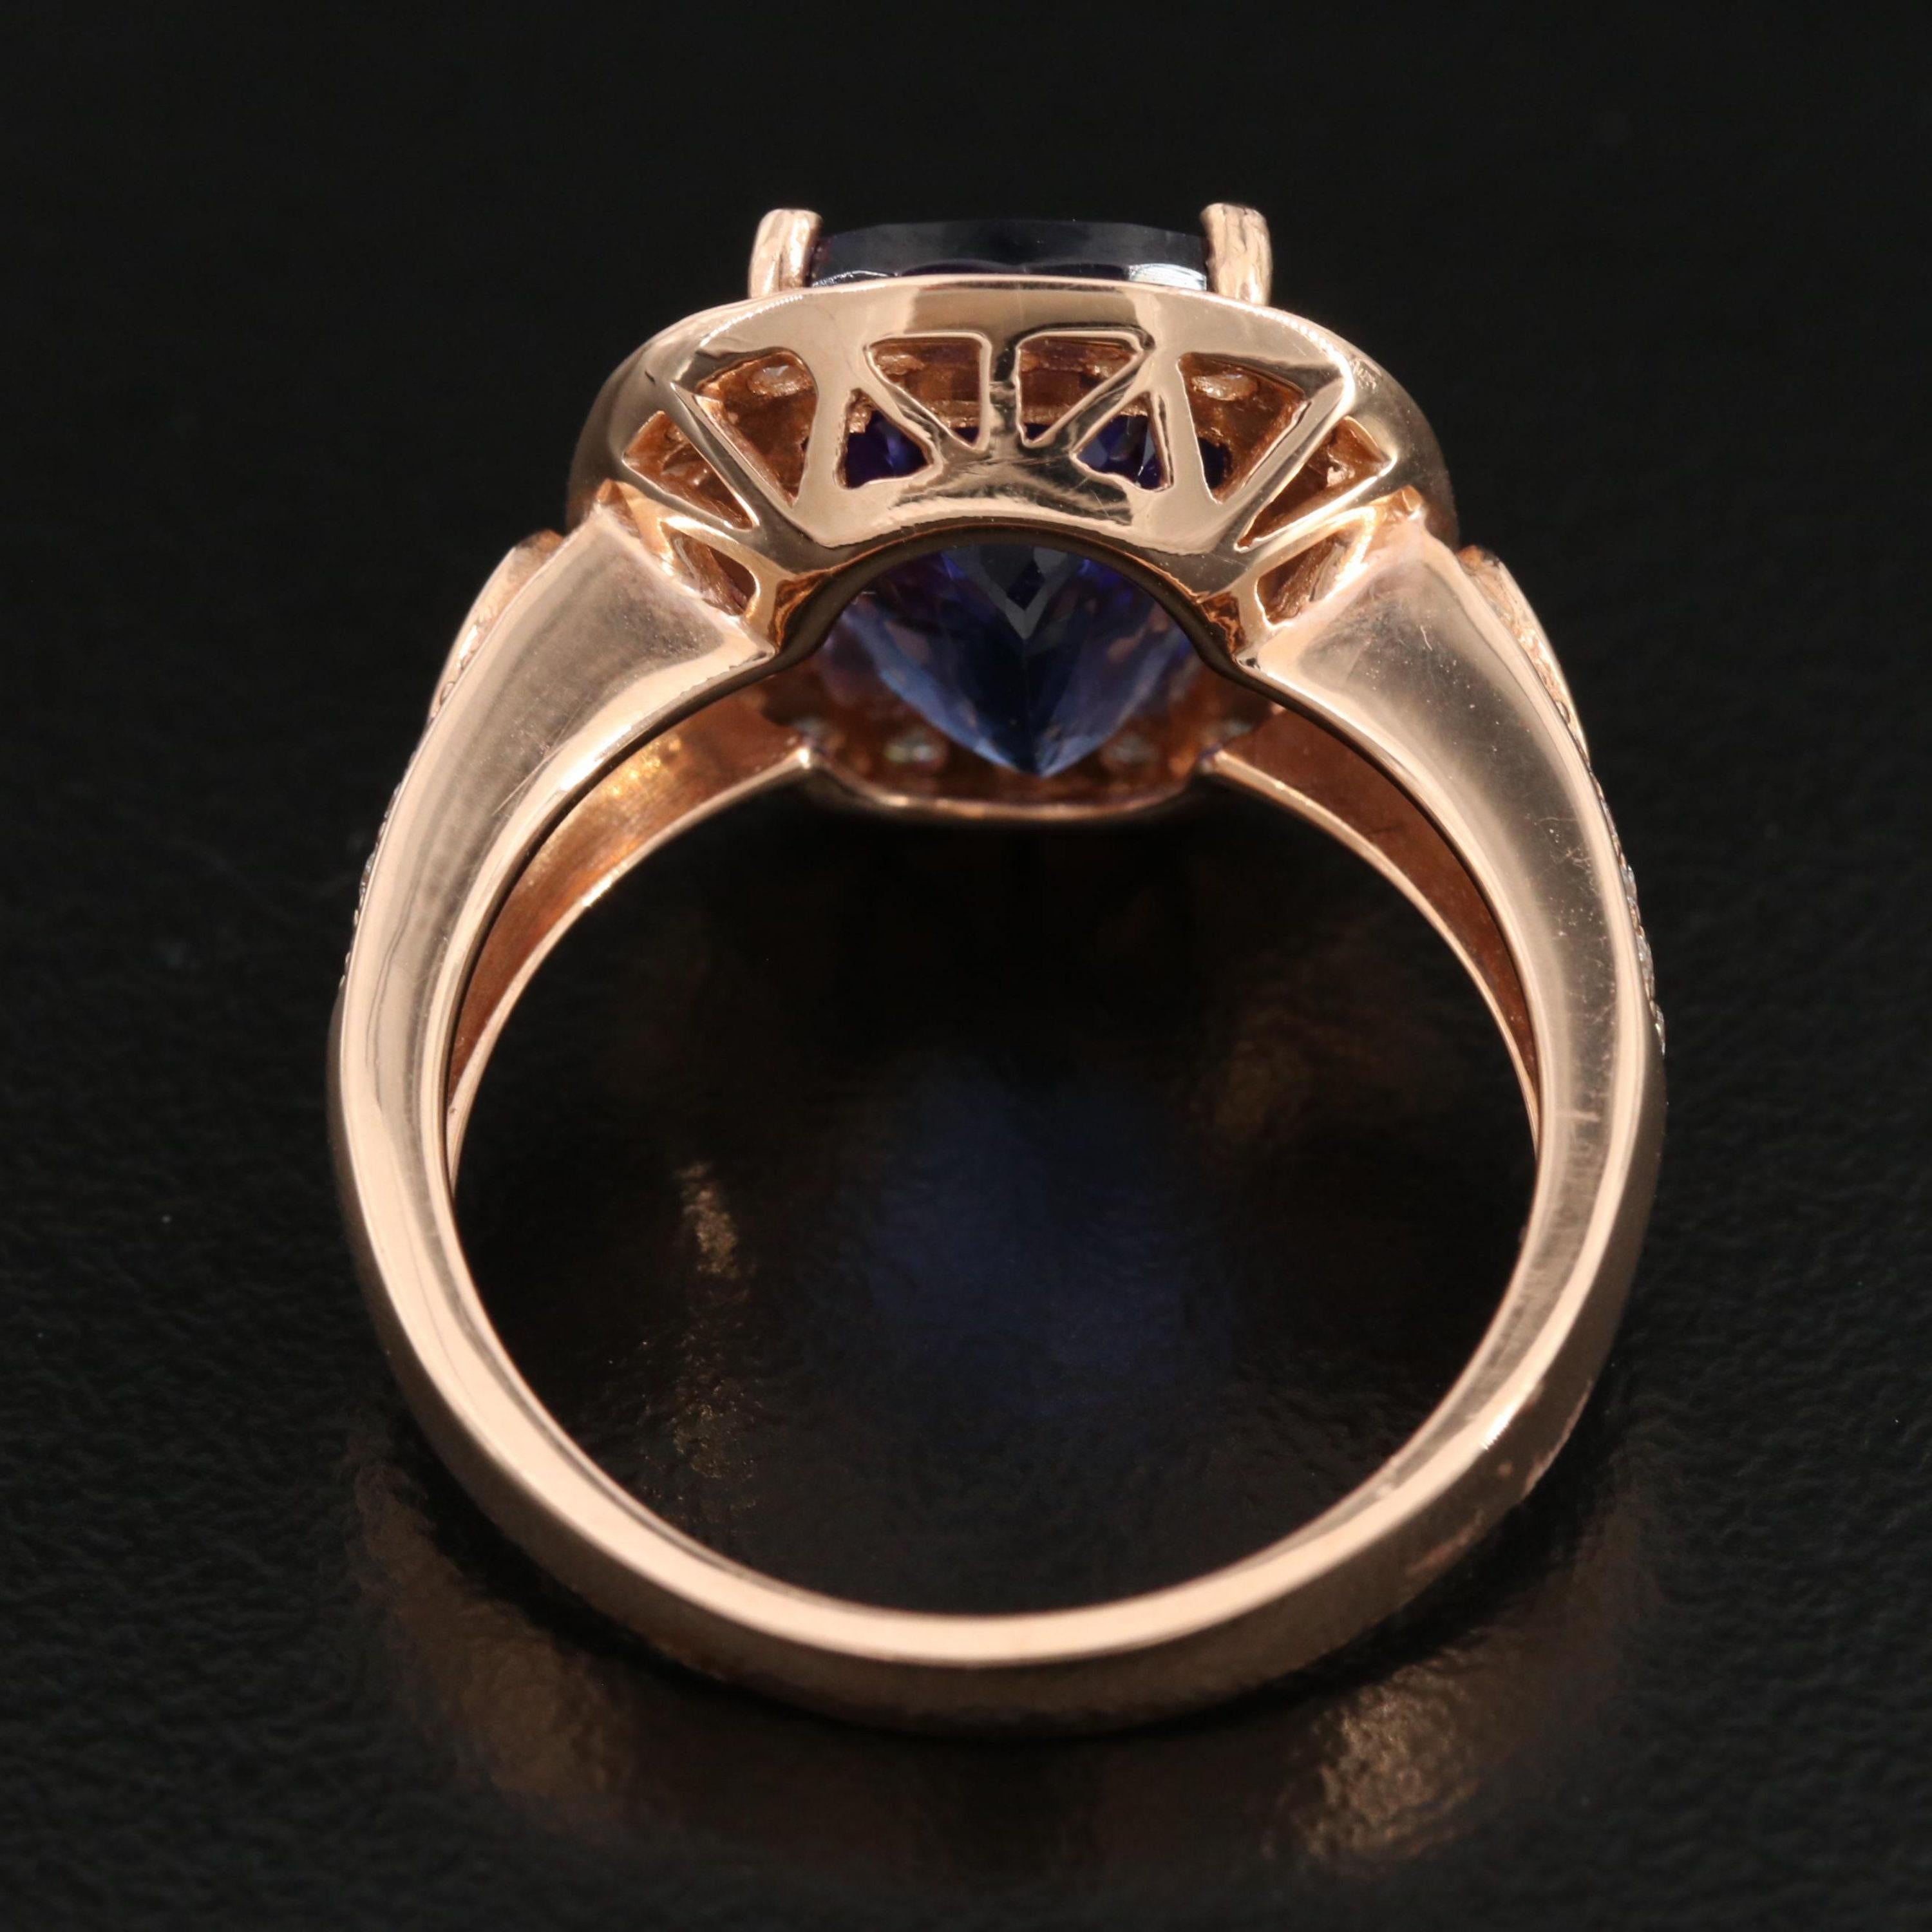 For Sale:  6 Carat Violet Tanzanite Engagement Ring, Halo Diamond Rose Gold Wedding Ring 6